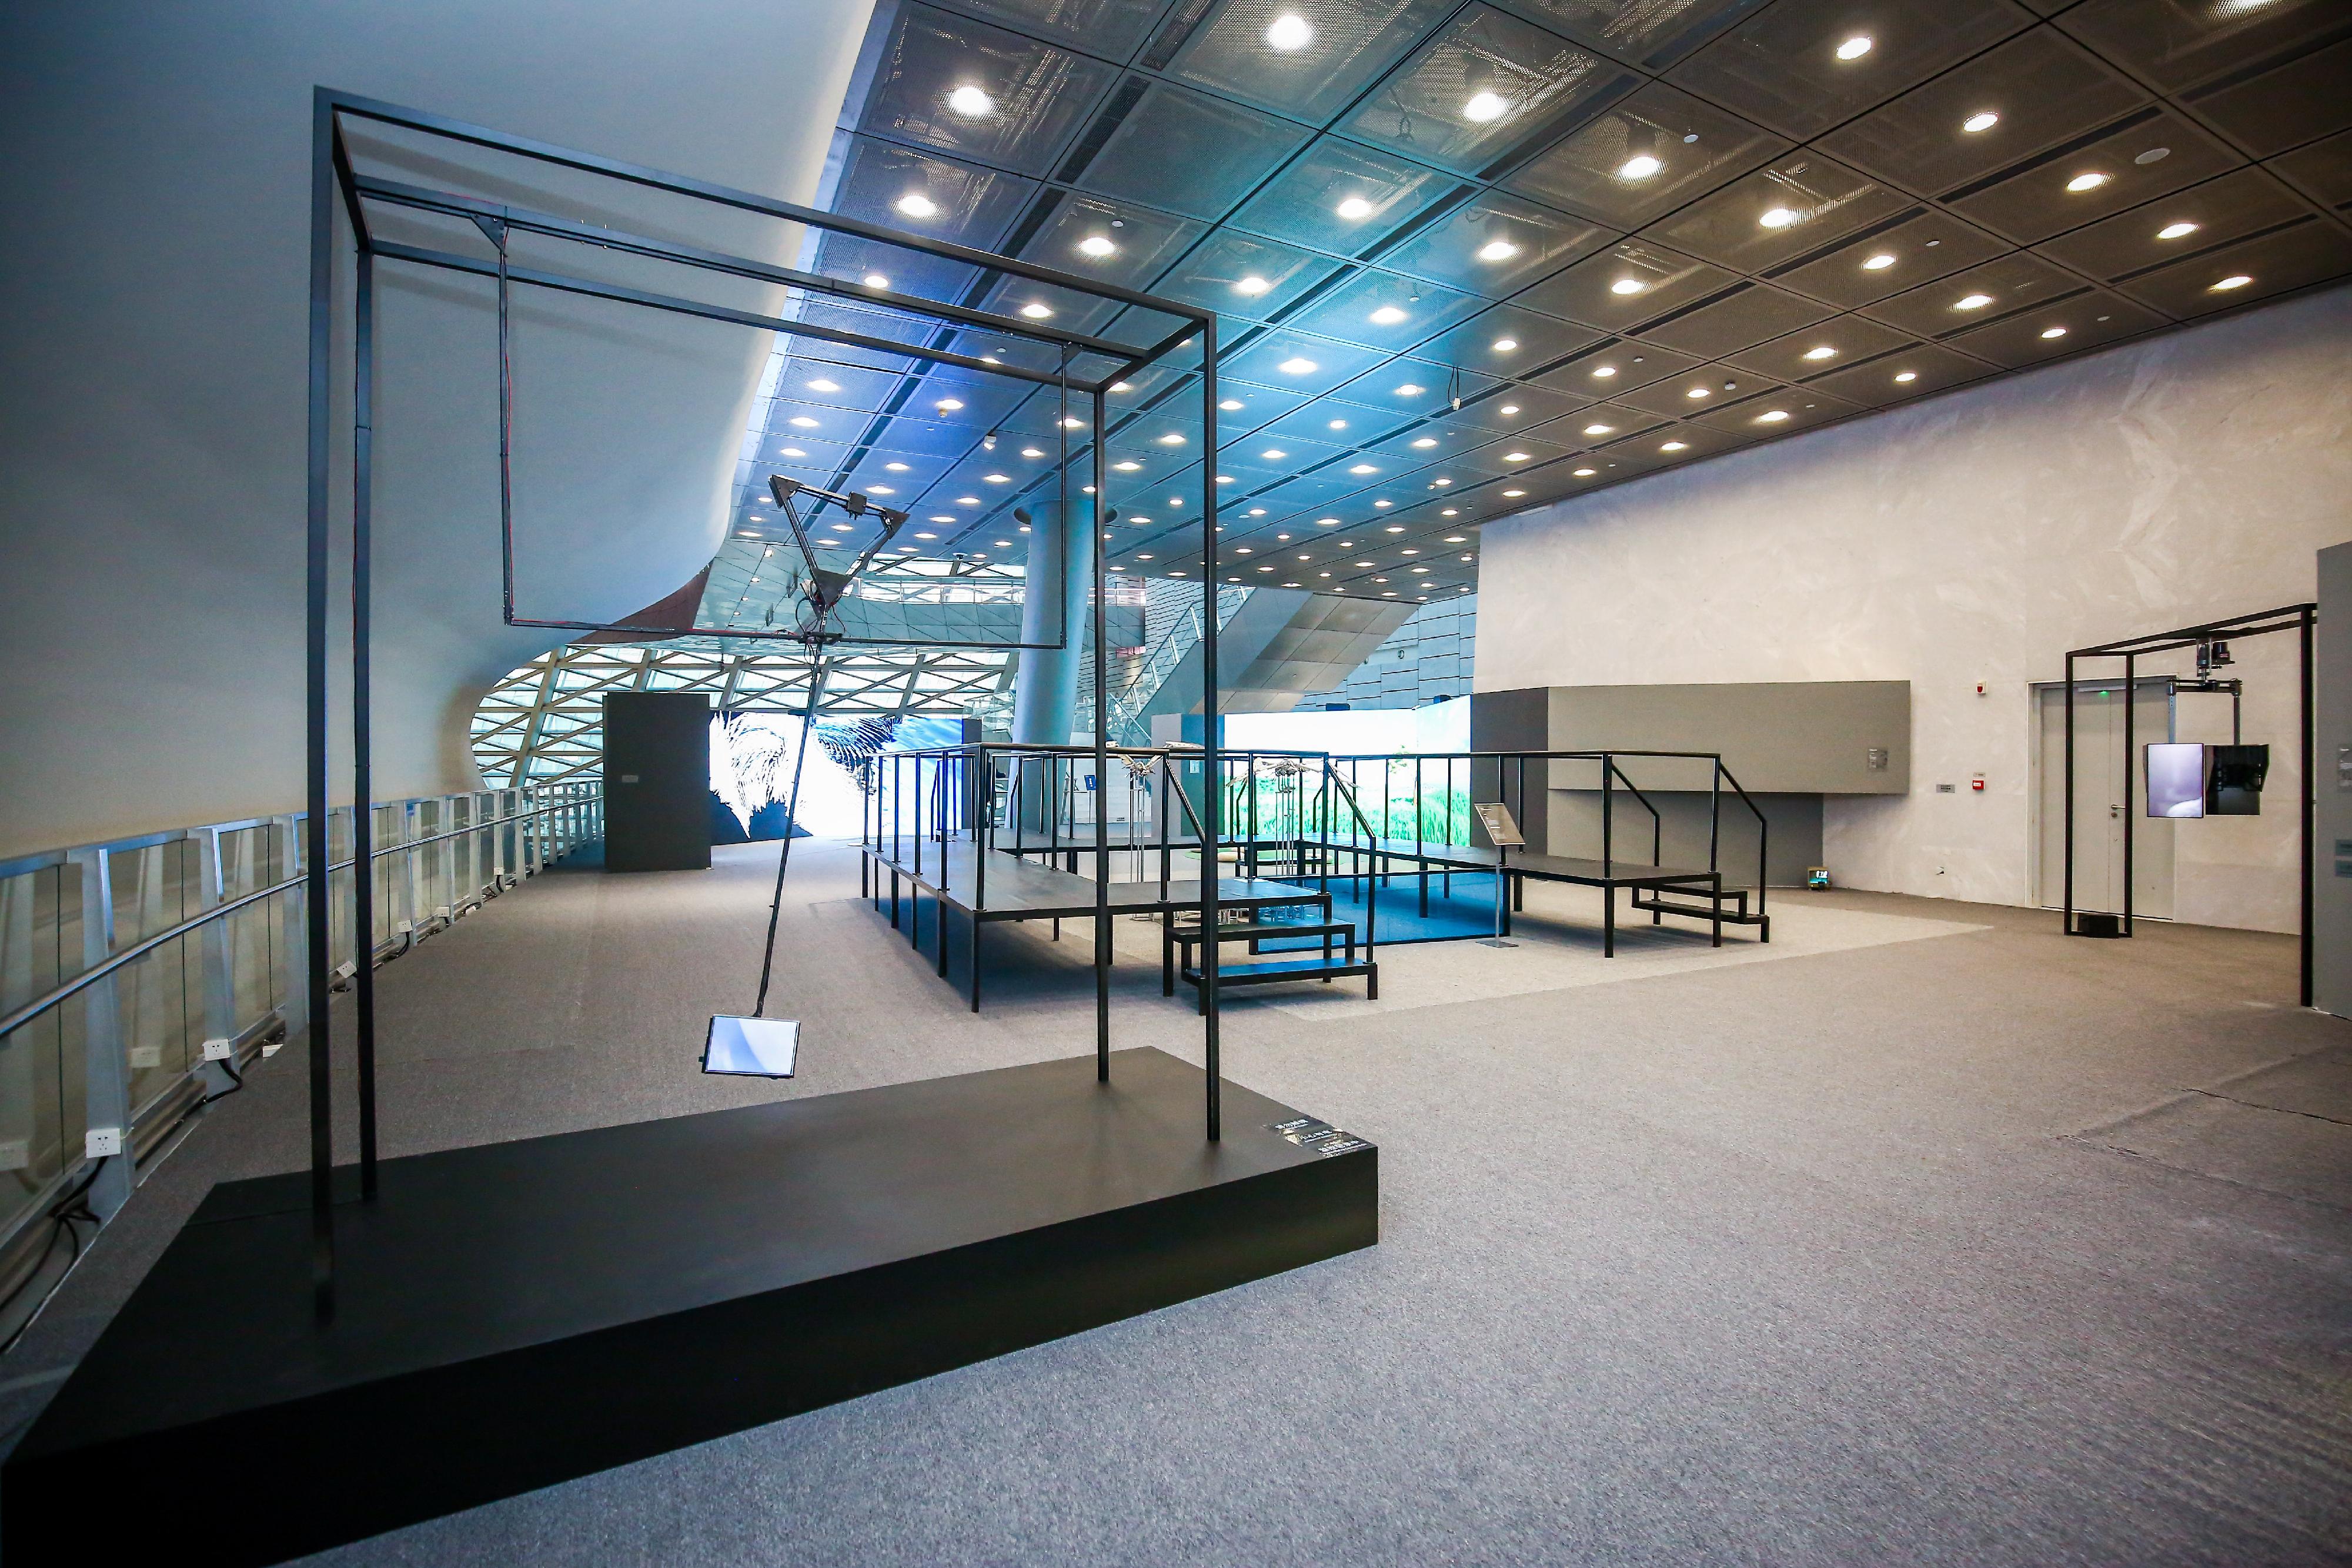 「2022港澳視覺藝術雙年展」深圳站展覽於深圳市當代藝術與城市規劃館舉行。圖示香港單元展覽展廳。